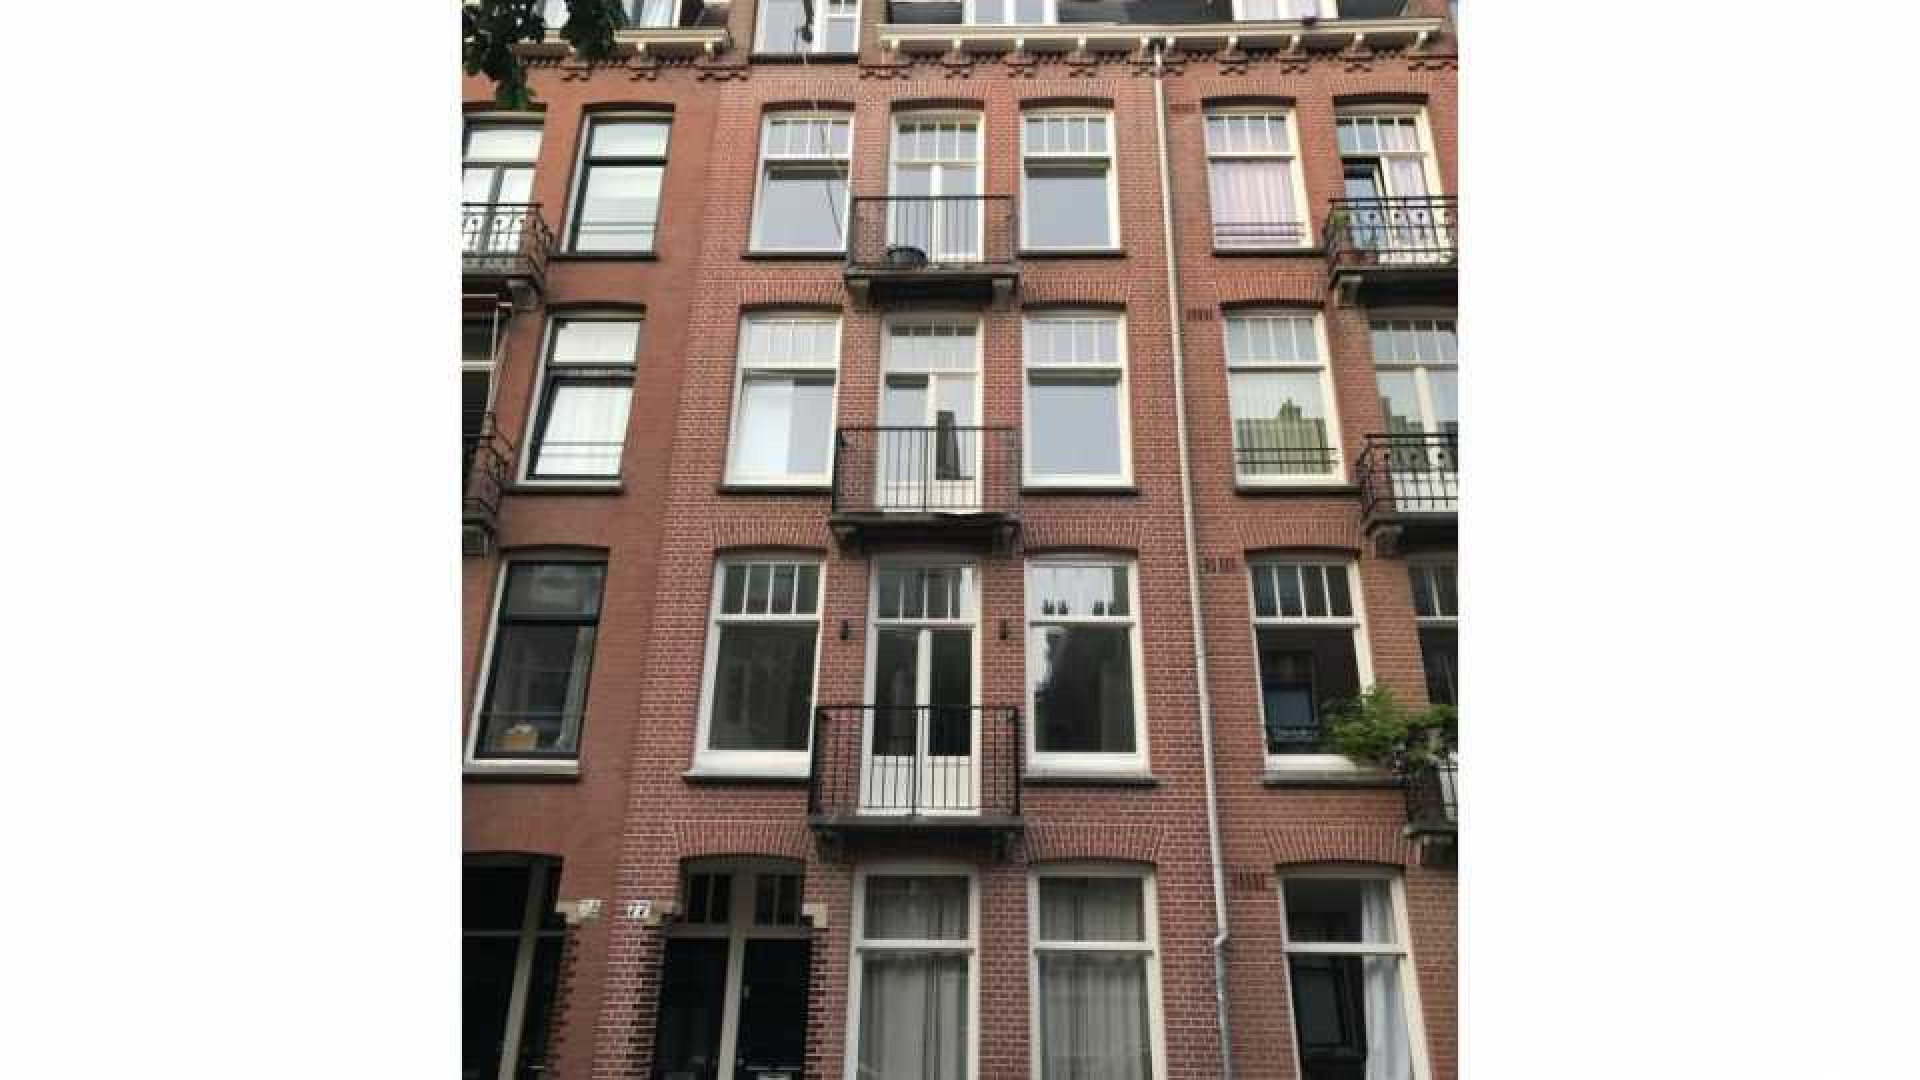 Ronald Koeman koopt voor bijna een miljoen dit dubbele bovenhuis in Amsterdam. Zie foto!